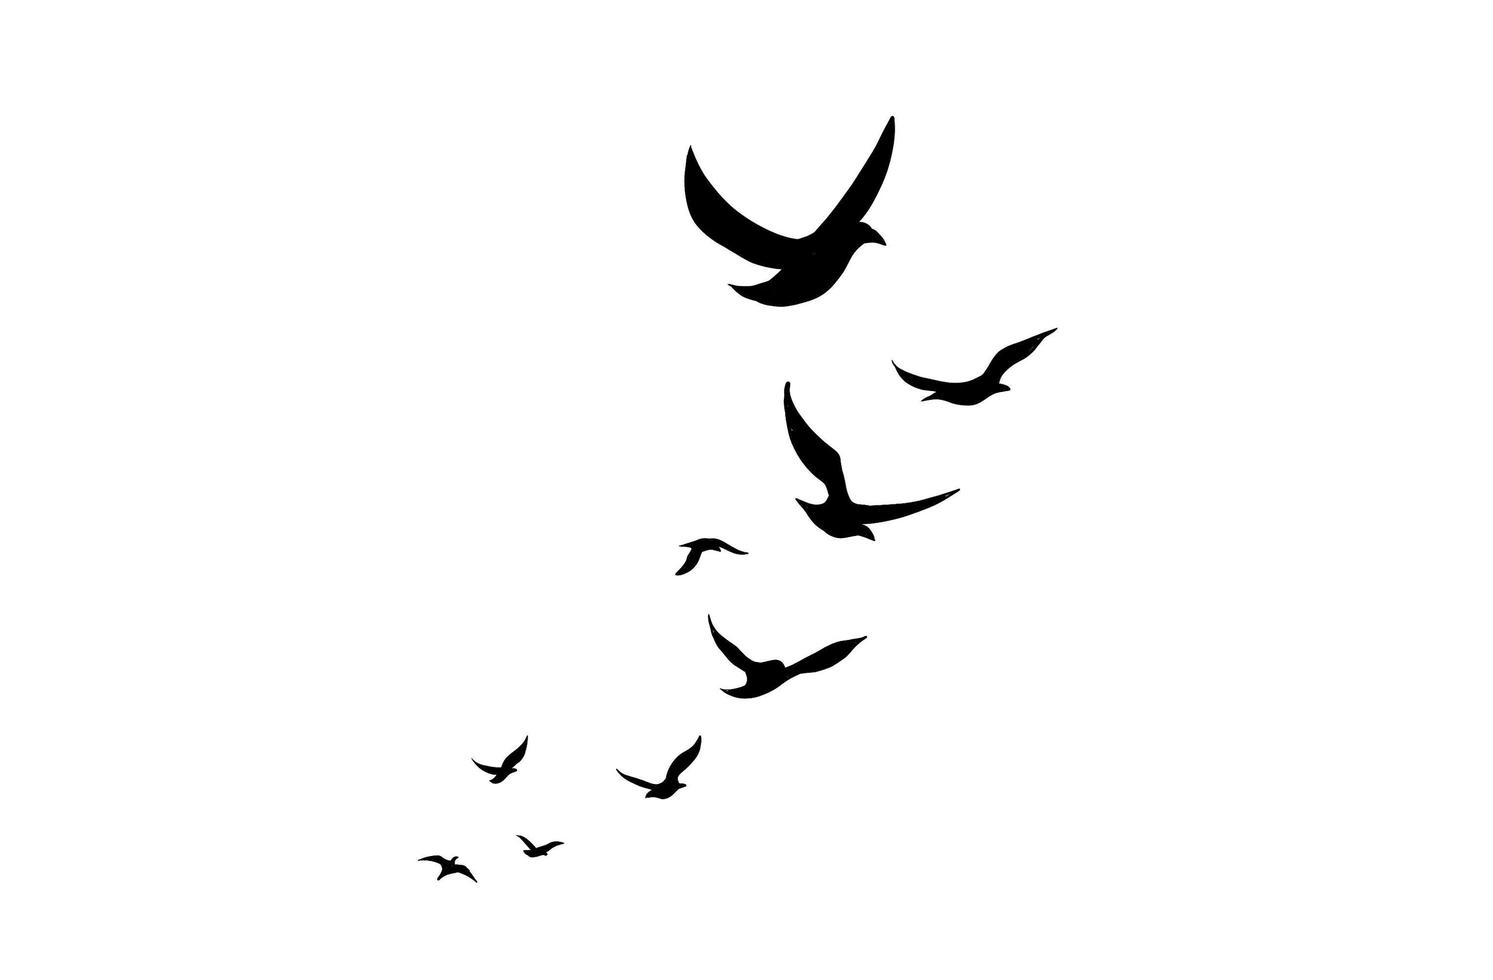 l'illustrazione di uccelli in volo isolato su uno sfondo bianco. uno stormo di animali volanti in un design semplice per un elemento decorativo e un tatuaggio. foto